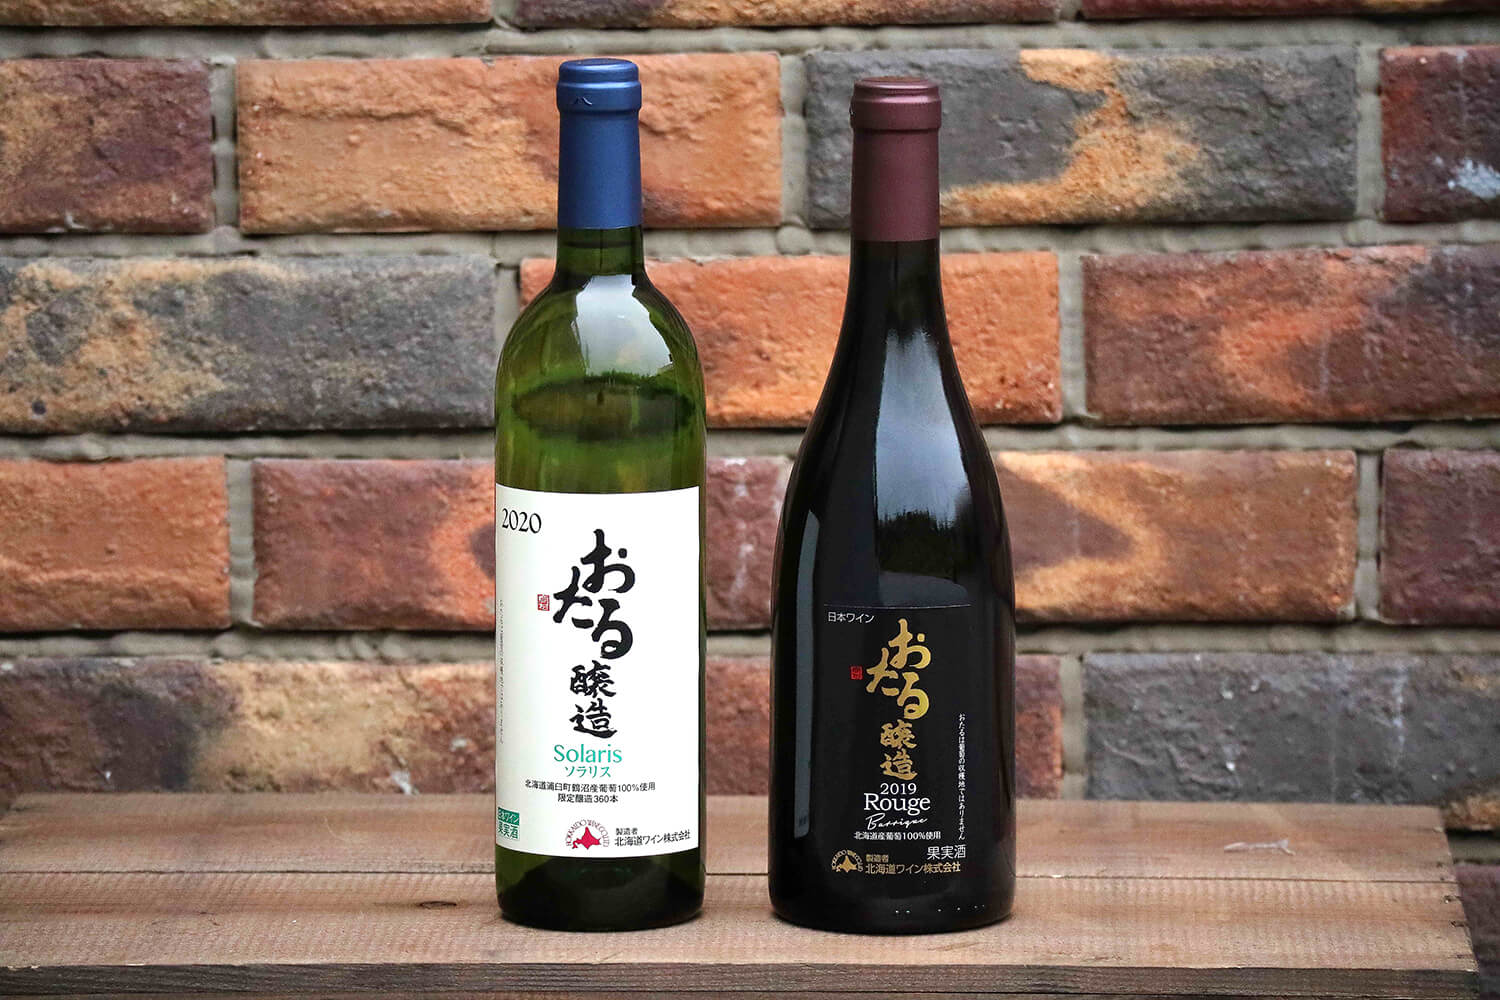 冷涼な気候が育むきれいな酸が北海道産ワインの魅力